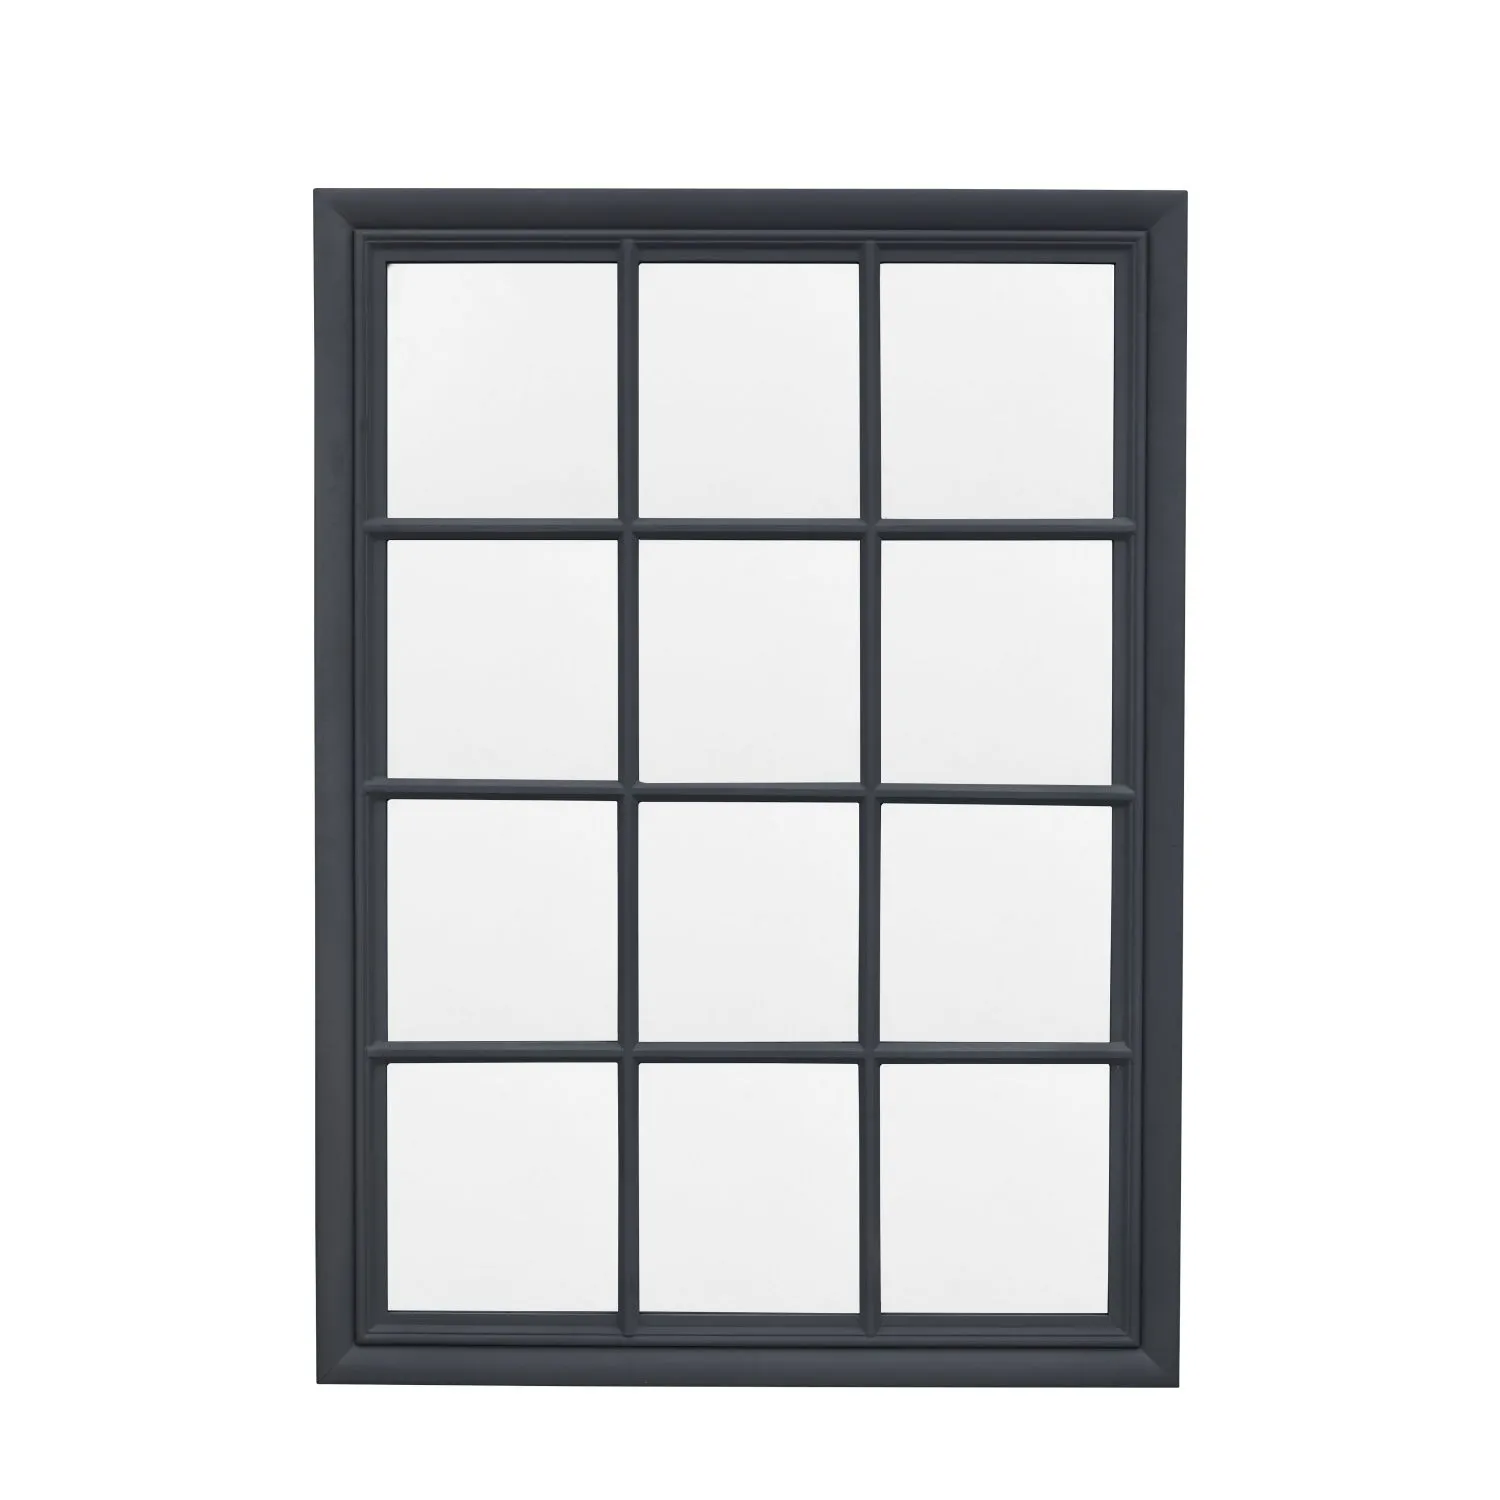 Glass Size mm W770 x H1120 Window Mirror Lead